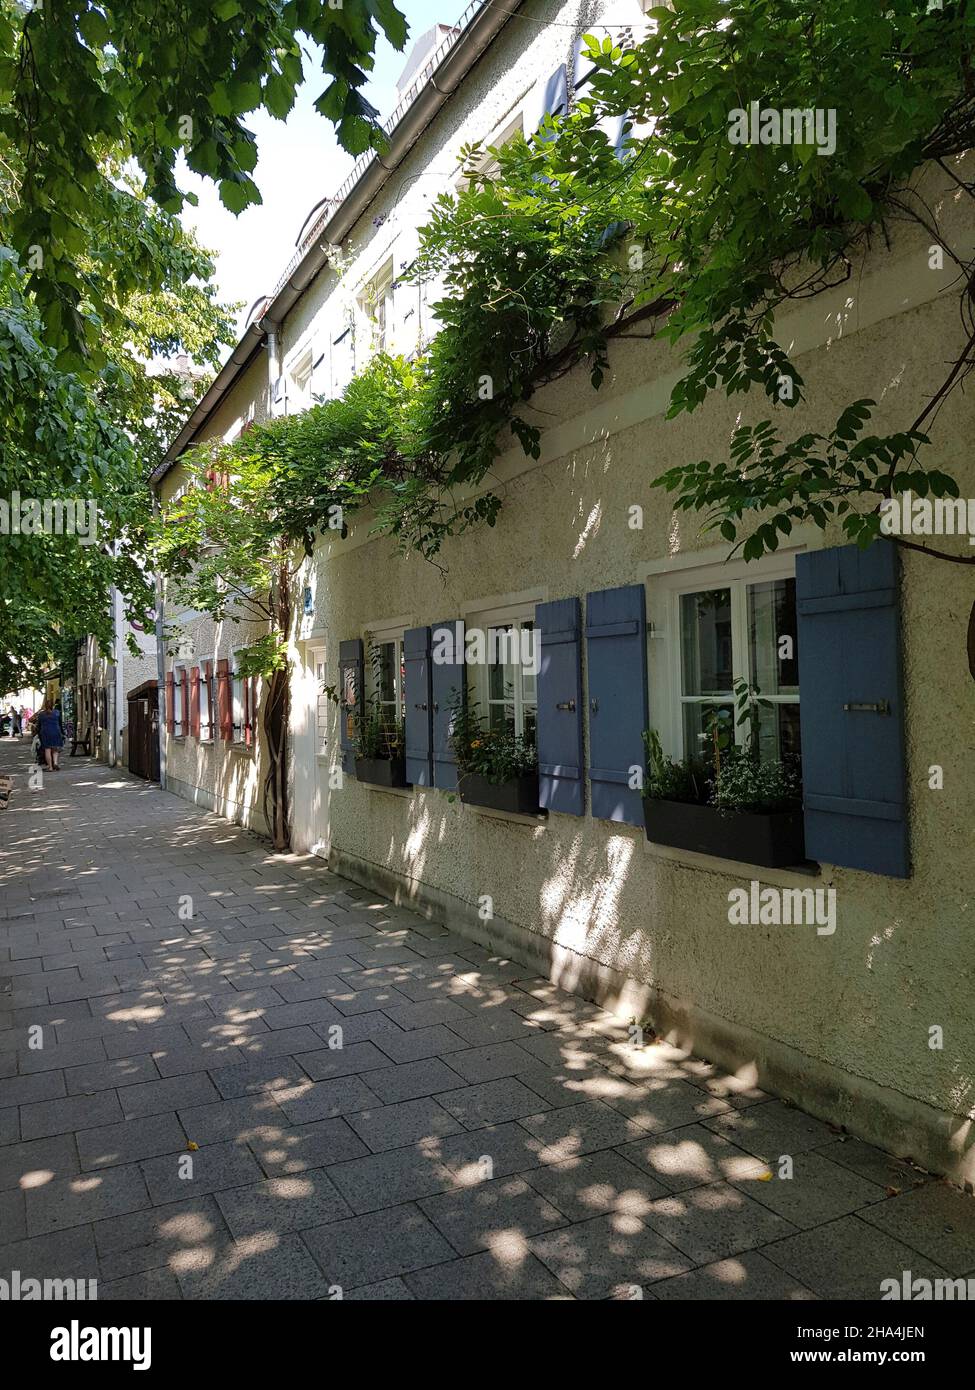 haidhausen, strada piccola romantica, case basse con persiane blu, un gioiello del villaggio, ex un luogo di residenza per i poveri, oggi una ricercata zona residenziale Foto Stock